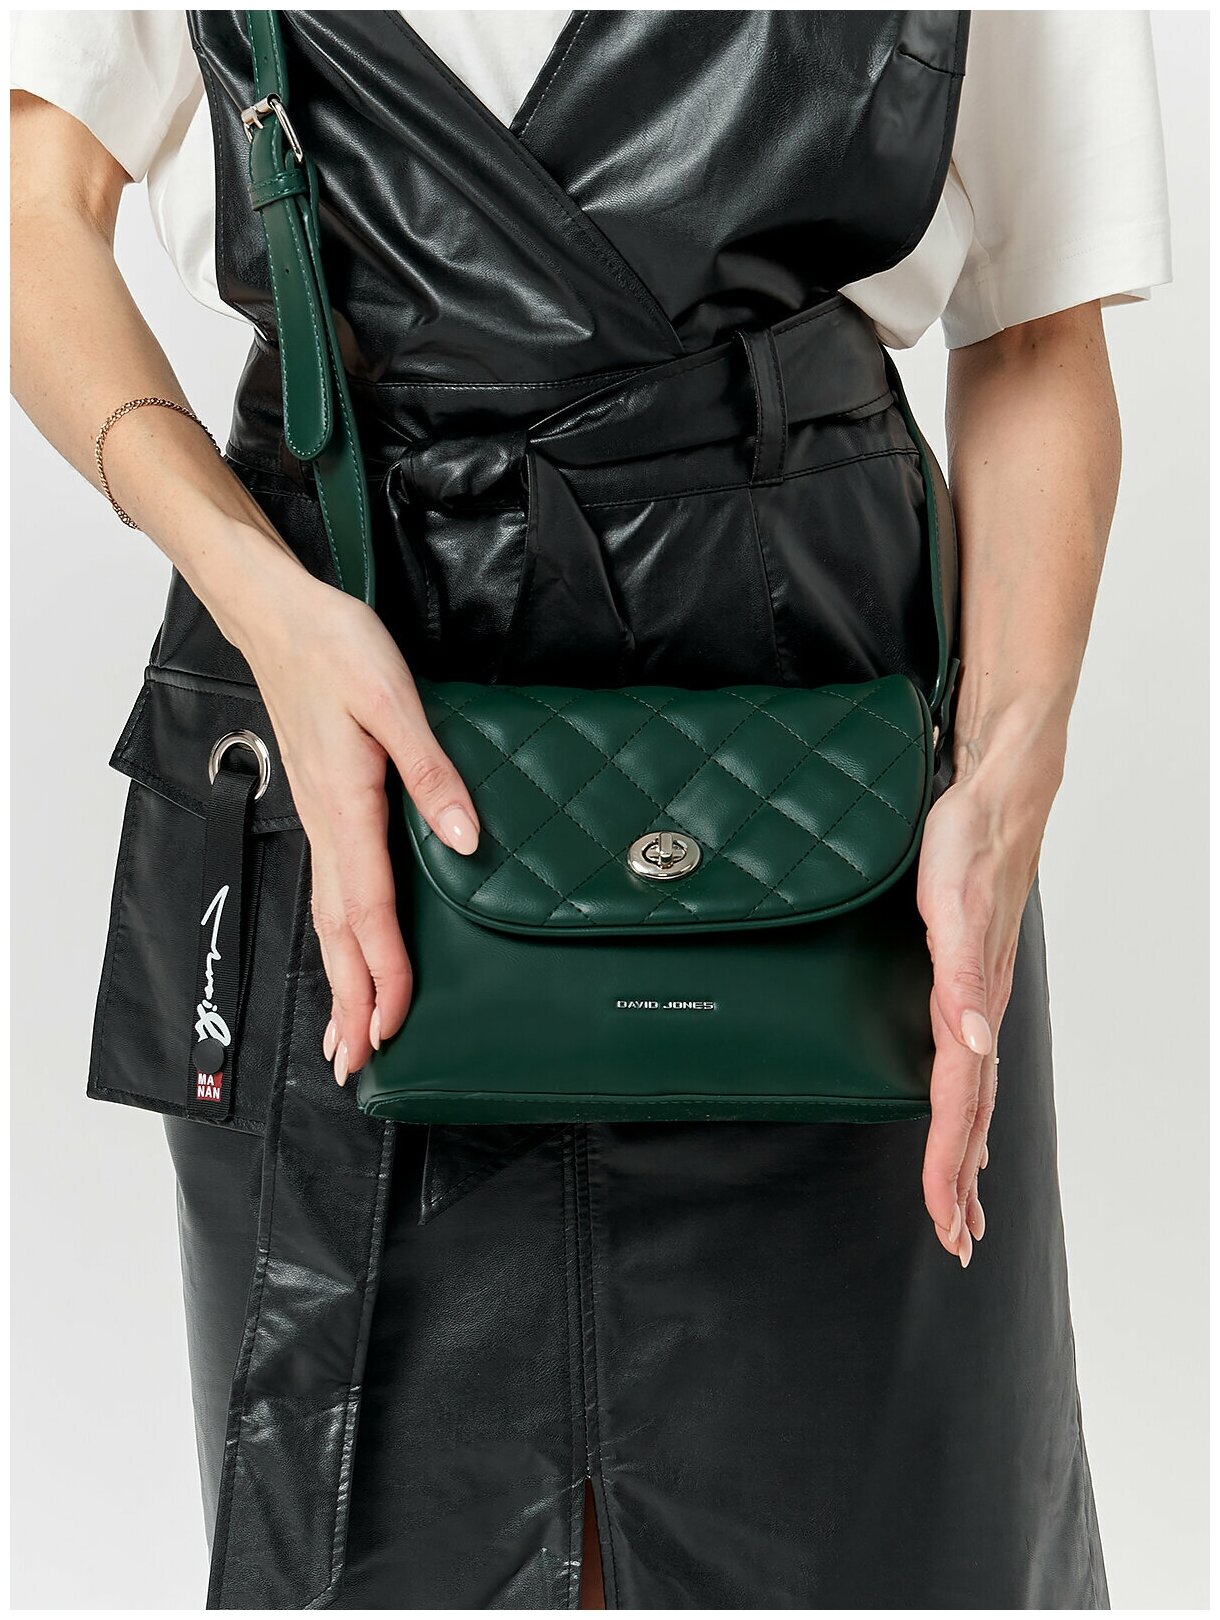 Стильная, влагозащитная, надежная и практичная женская сумка из экокожи David Jones 6616-2K/D.GREEN